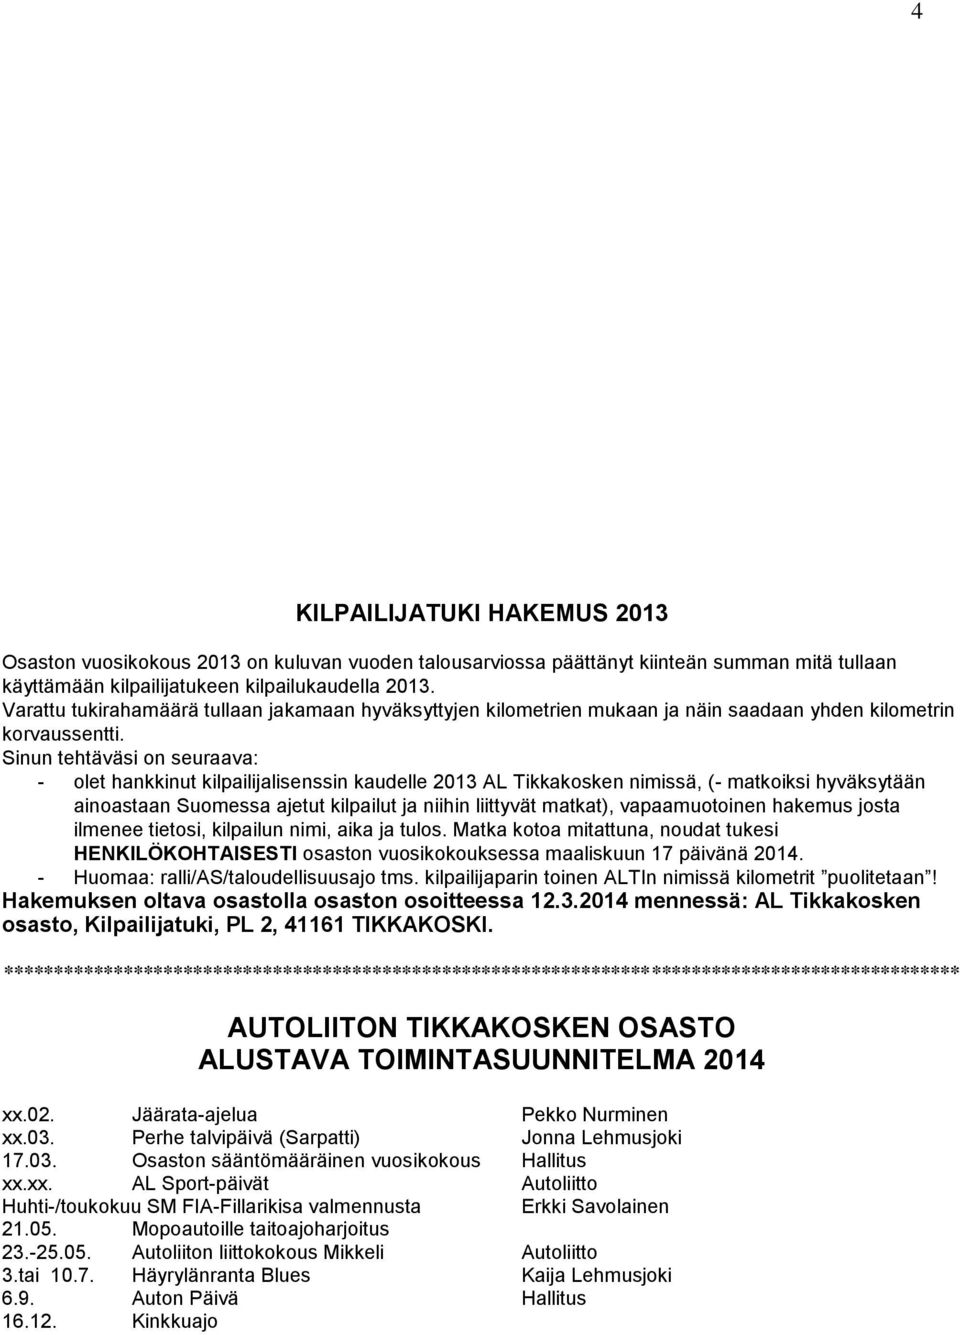 Sinun tehtäväsi on seuraava: - olet hankkinut kilpailijalisenssin kaudelle 2013 AL Tikkakosken nimissä, (- matkoiksi hyväksytään ainoastaan Suomessa ajetut kilpailut ja niihin liittyvät matkat),